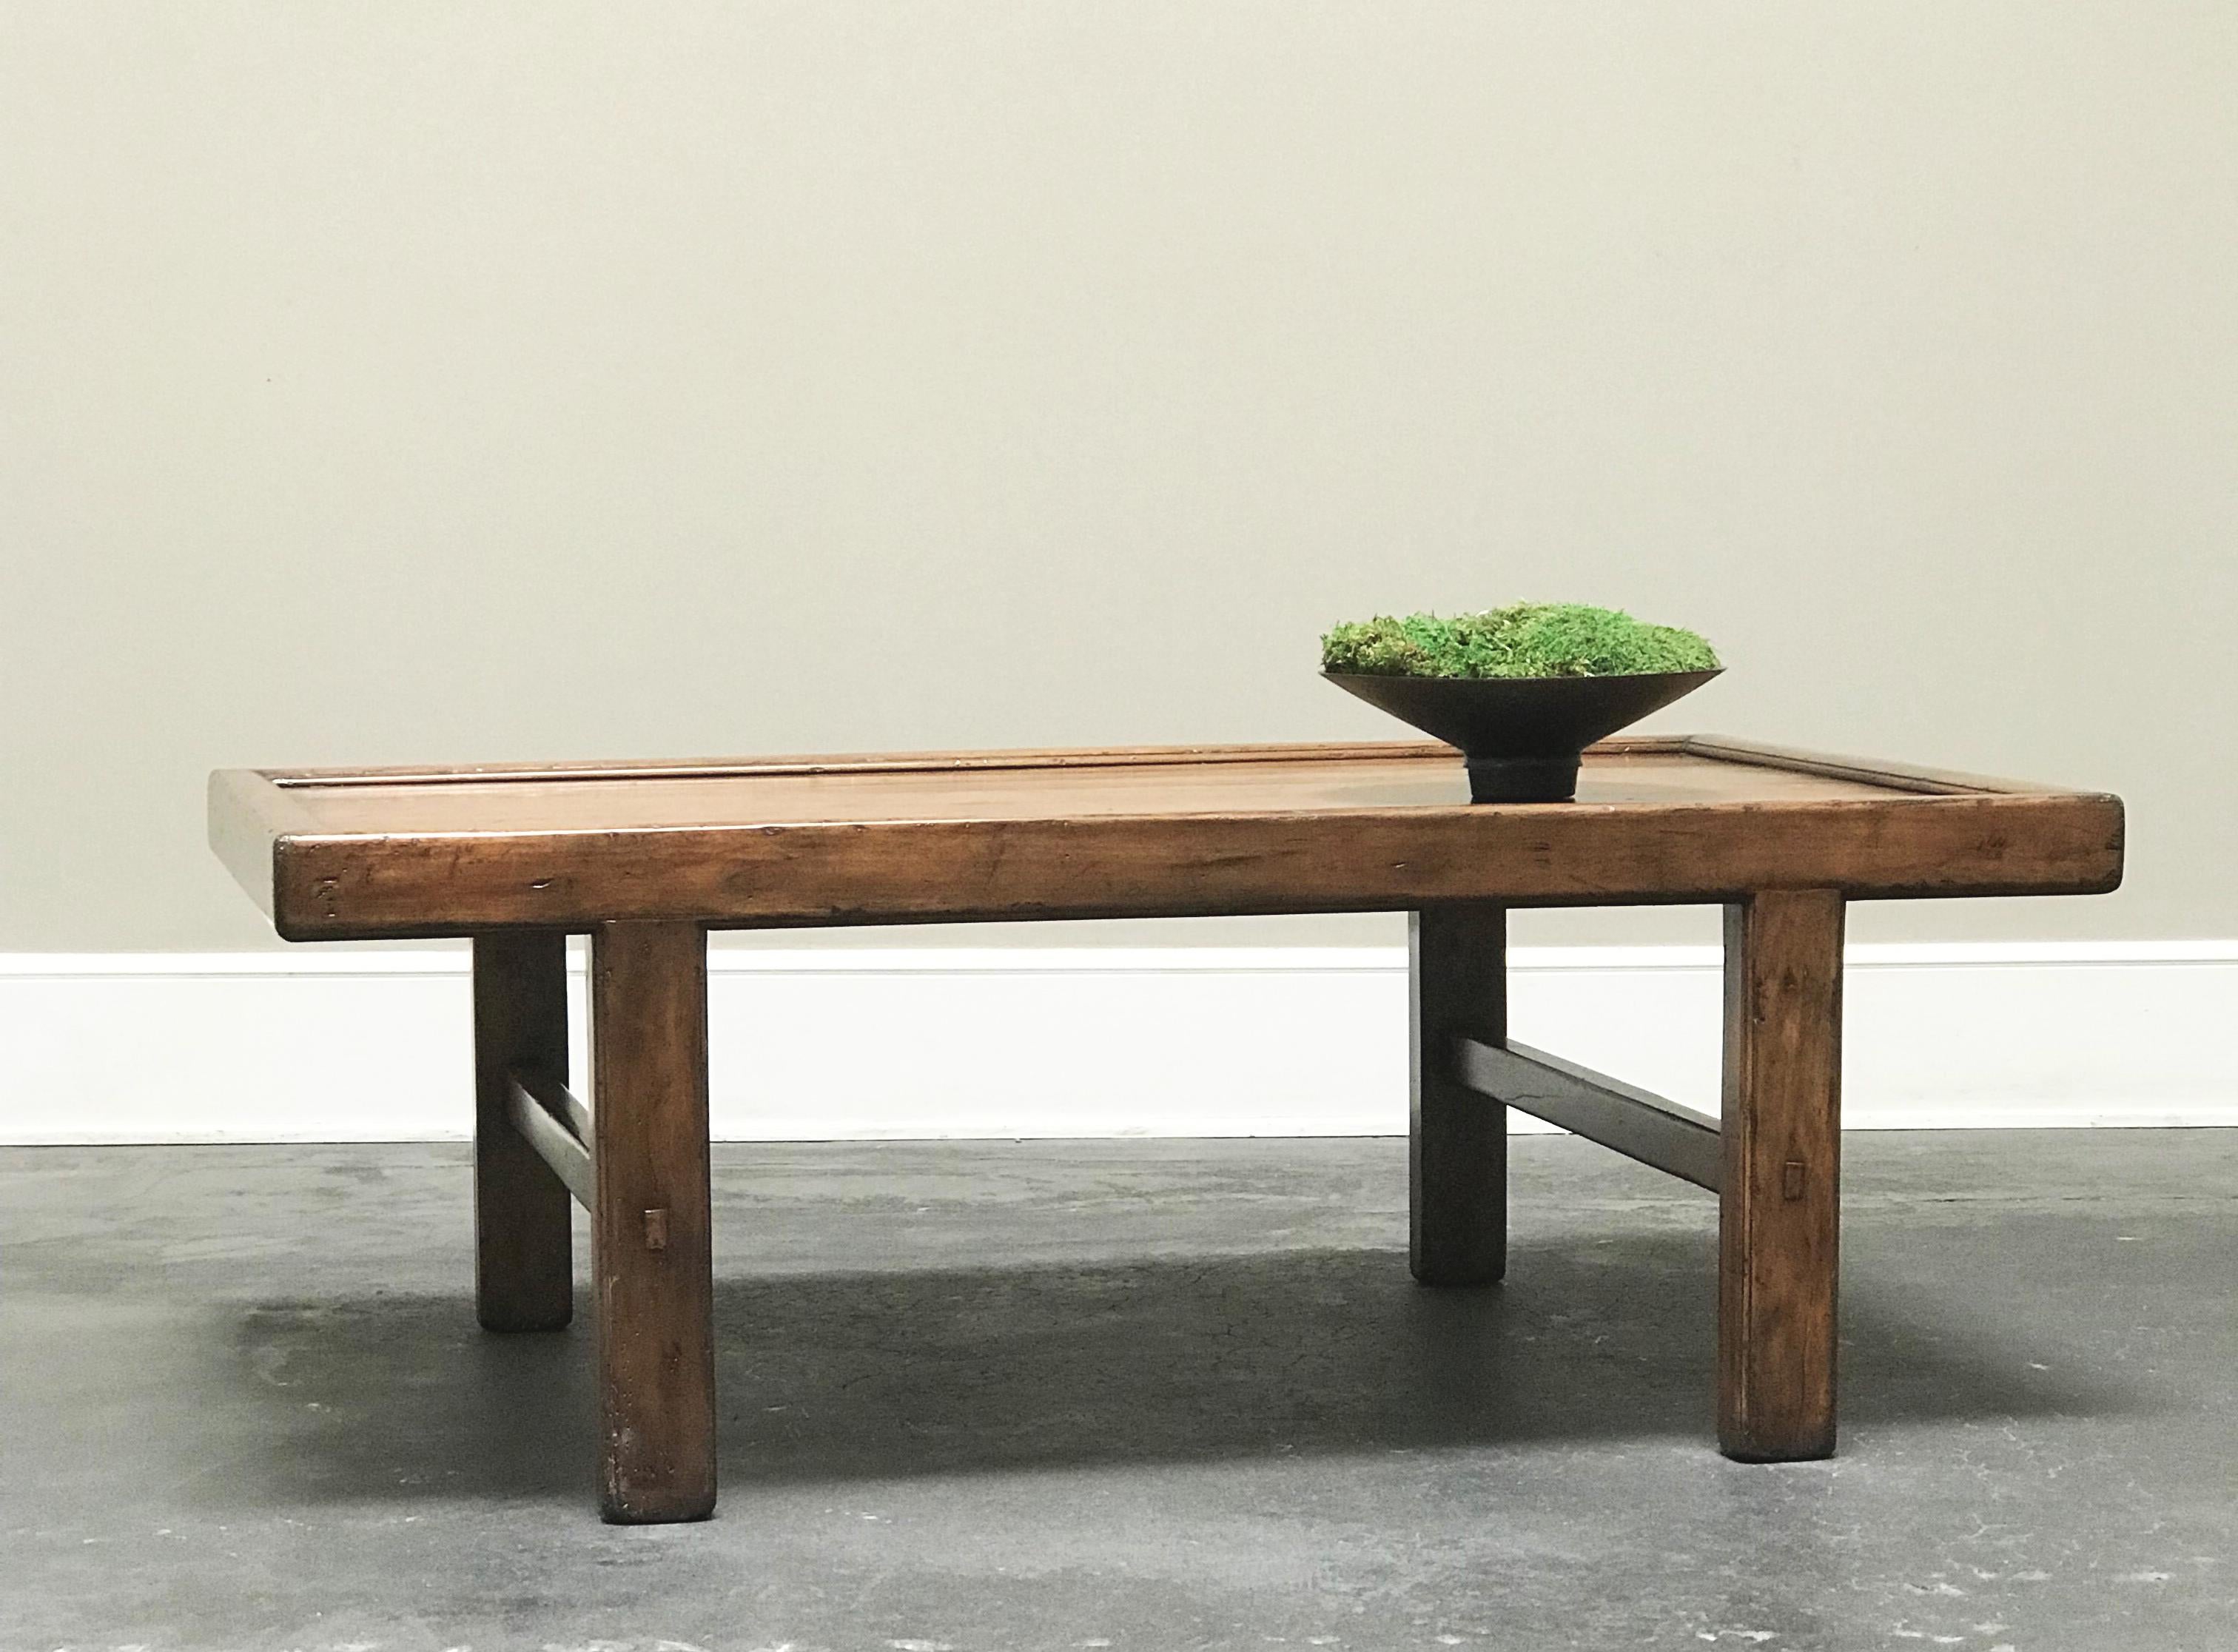 Notre interprétation d'une table kang chinoise du XIXe siècle. Des brancards simples et épurés sur quatre pieds droits. Même dans la patine et la surface. Délai de livraison de 4 à 6 semaines.
Tailles sur mesure disponibles.